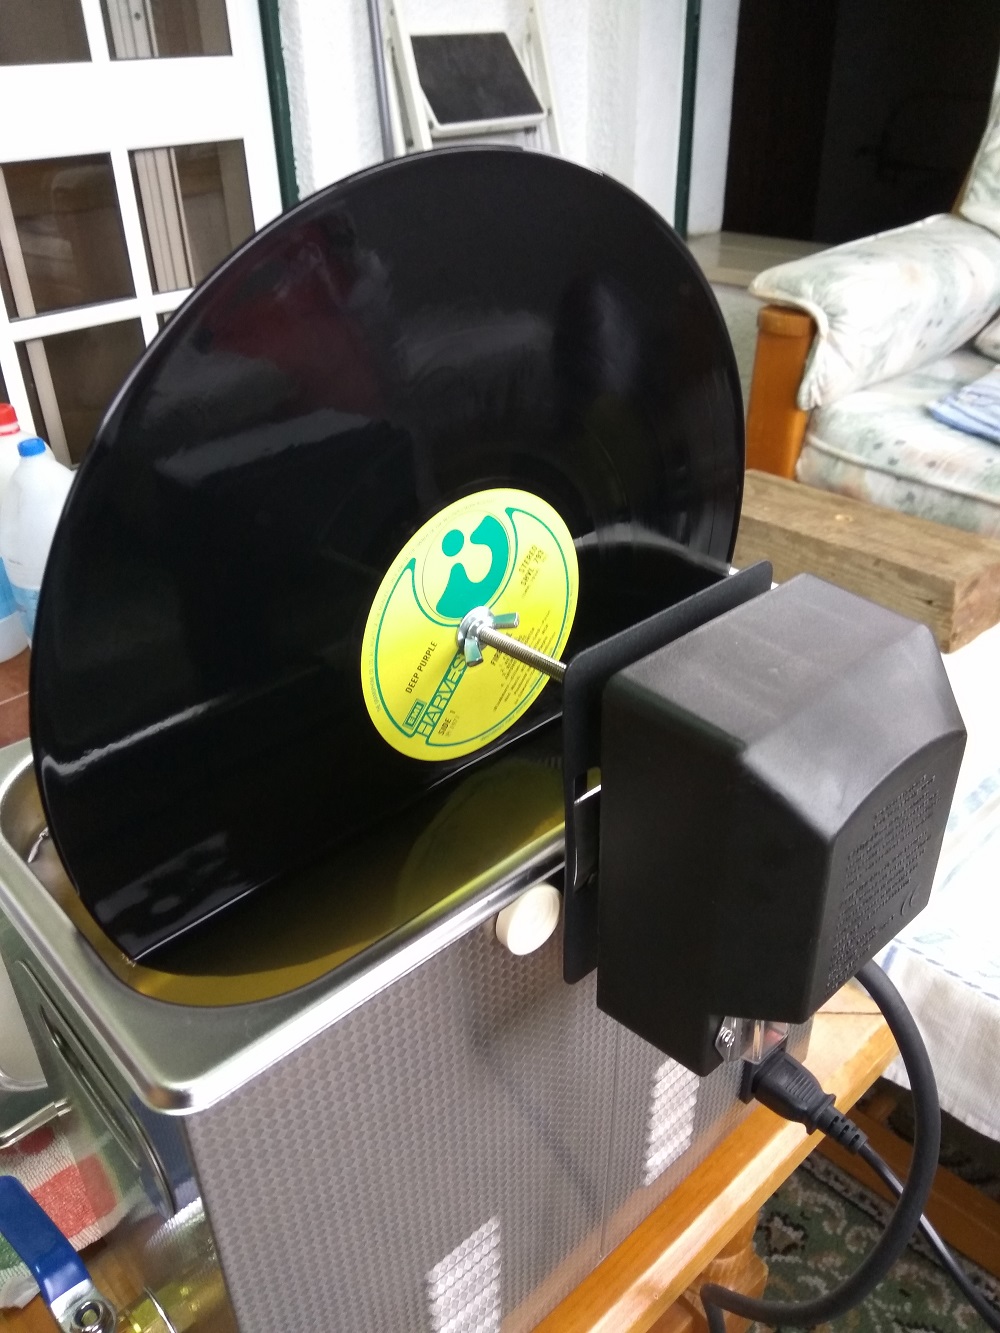 Maquina de lavar discos de vinil (LP) - Página 2 Img_2018